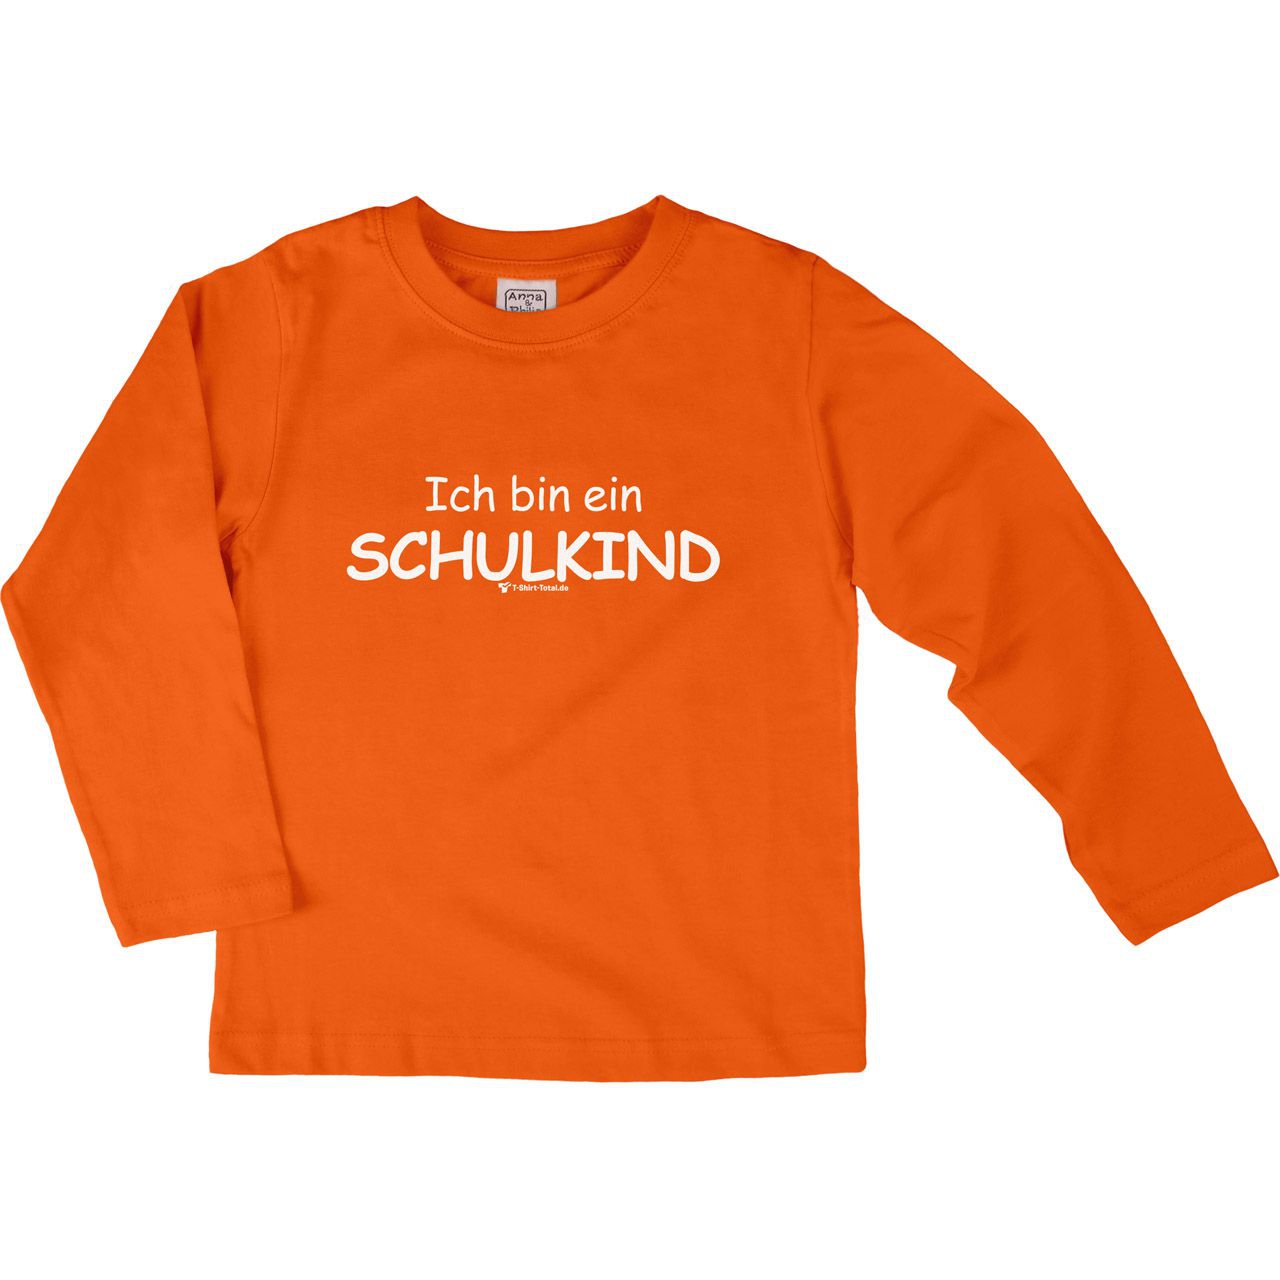 Ich bin ein Schulkind Kinder Langarm Shirt orange 122 / 128